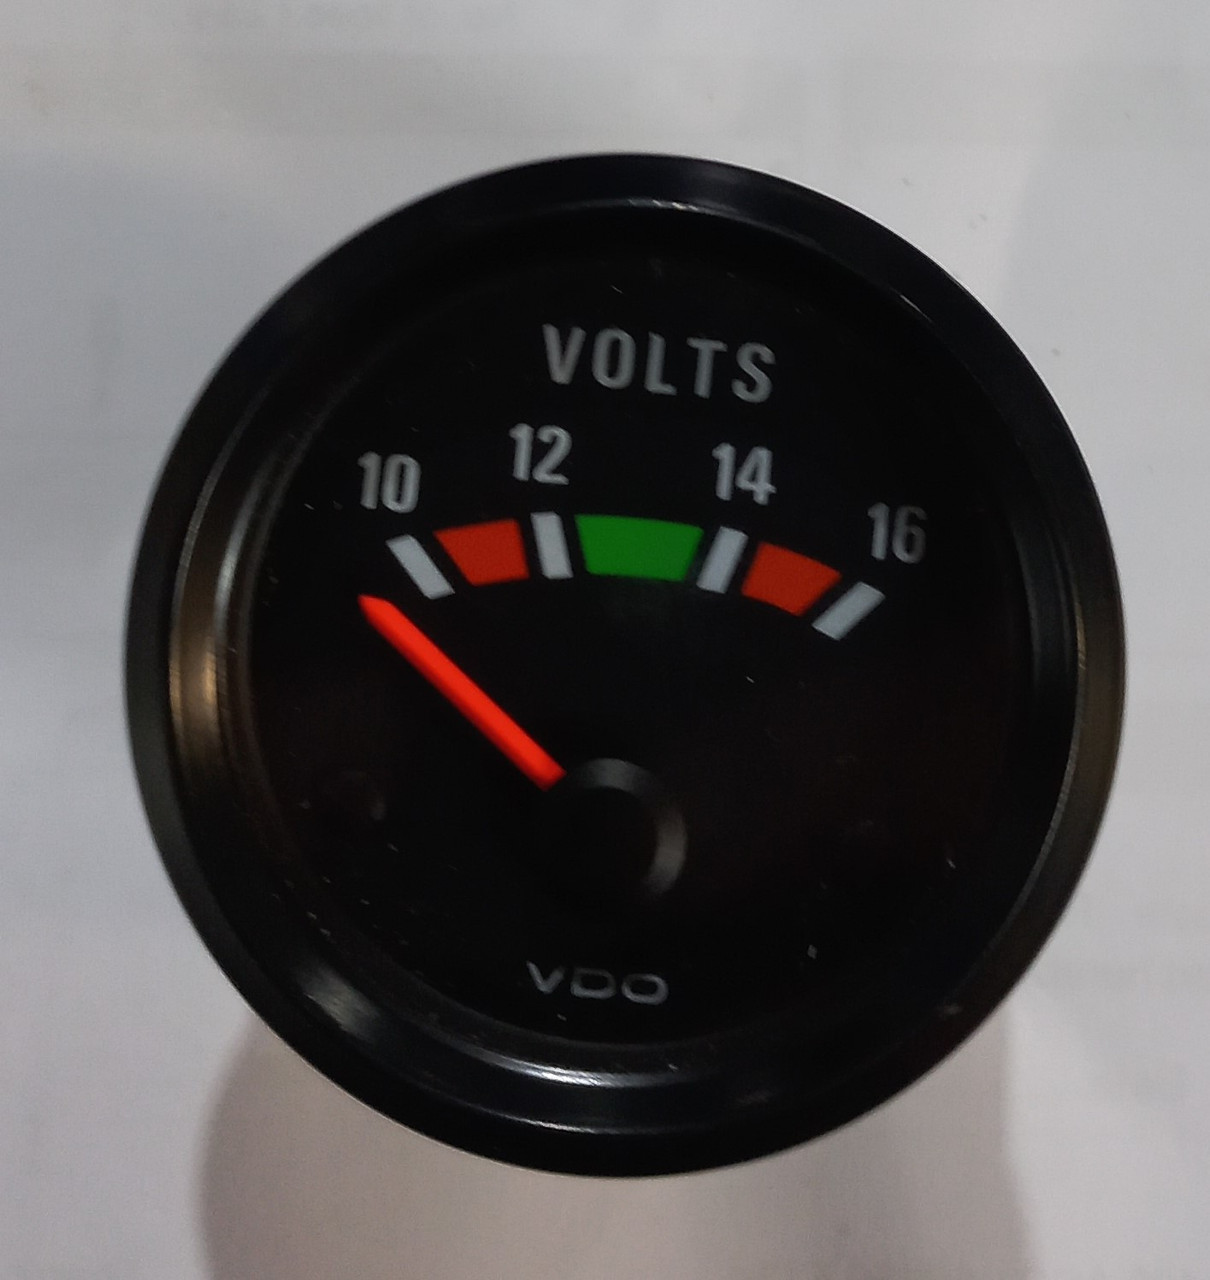 VDO Volt gauge 10-16